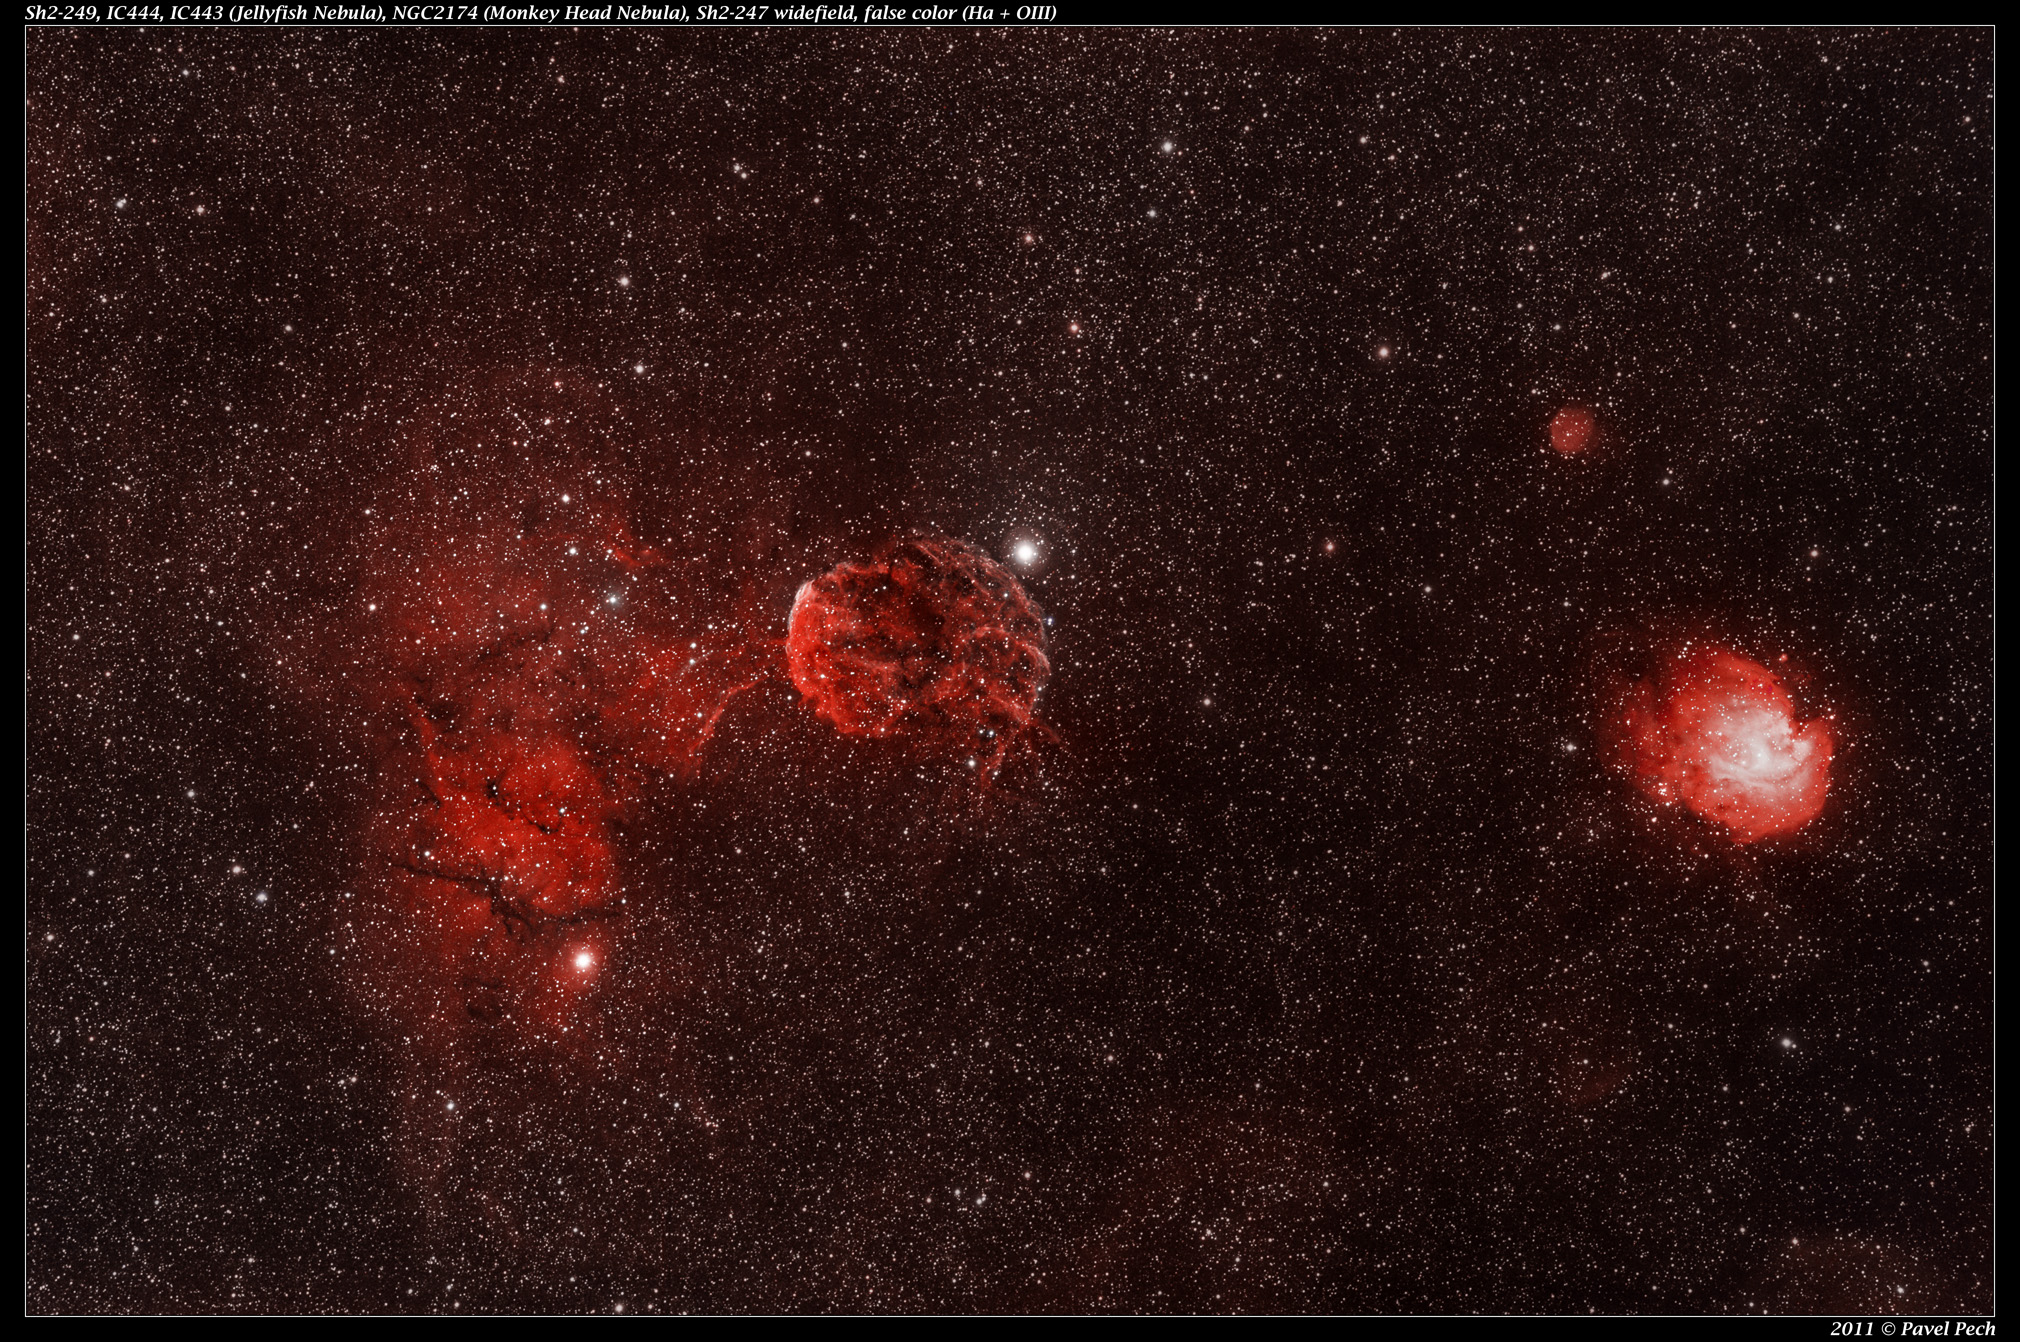 Sh2-249, IC444, IC443, Jellyfish, NGC2174, Monkey Head, Sh2-247